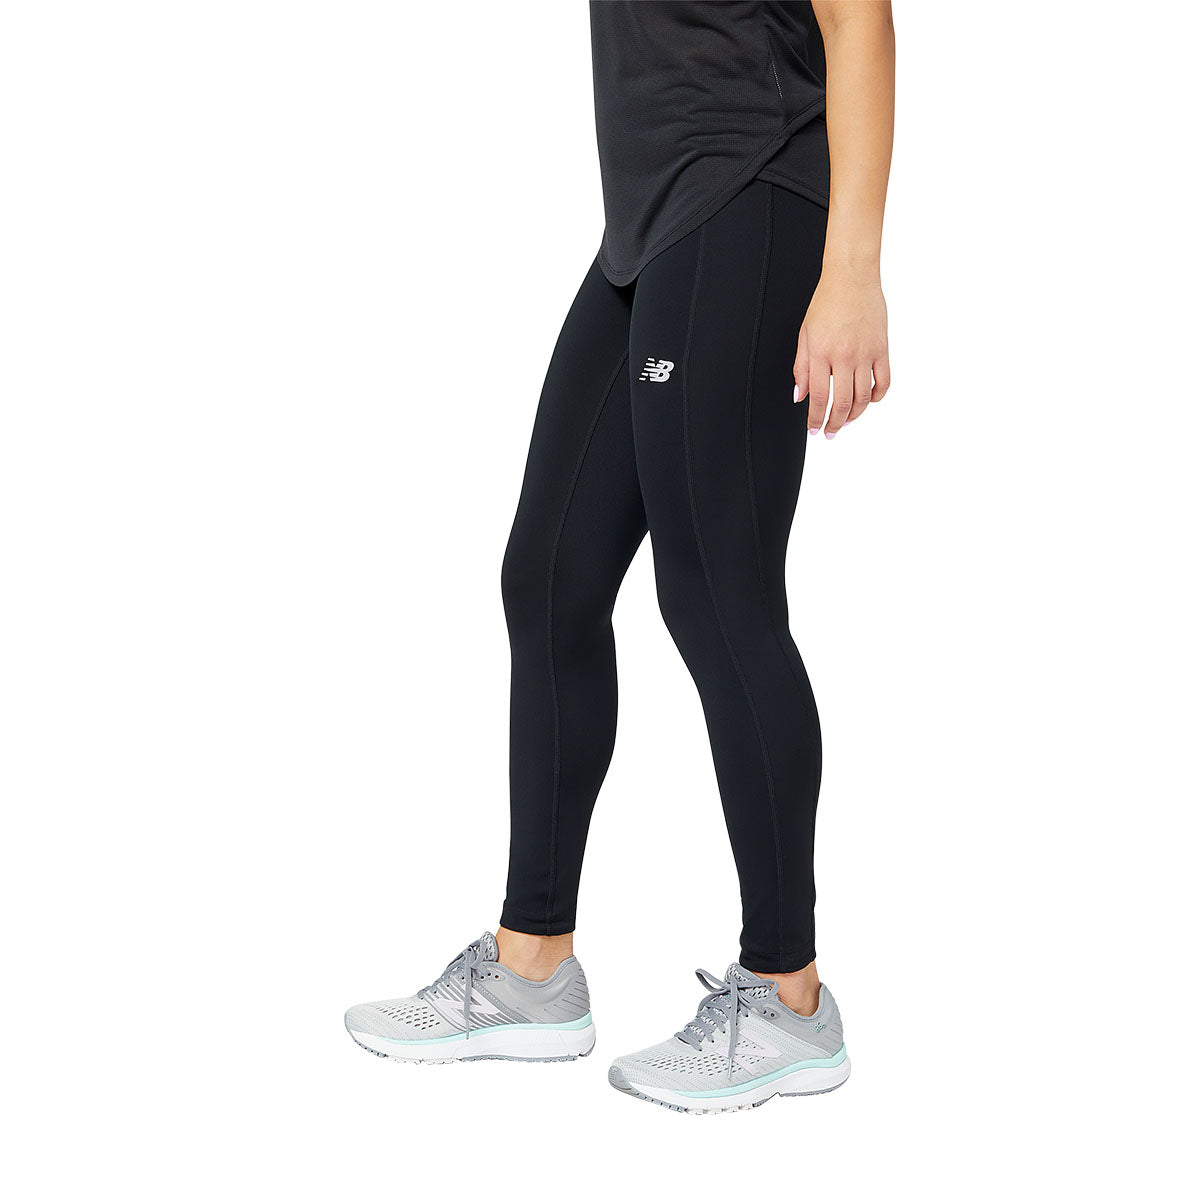 NEWBALANCE Accelerate Women's Workout Pants